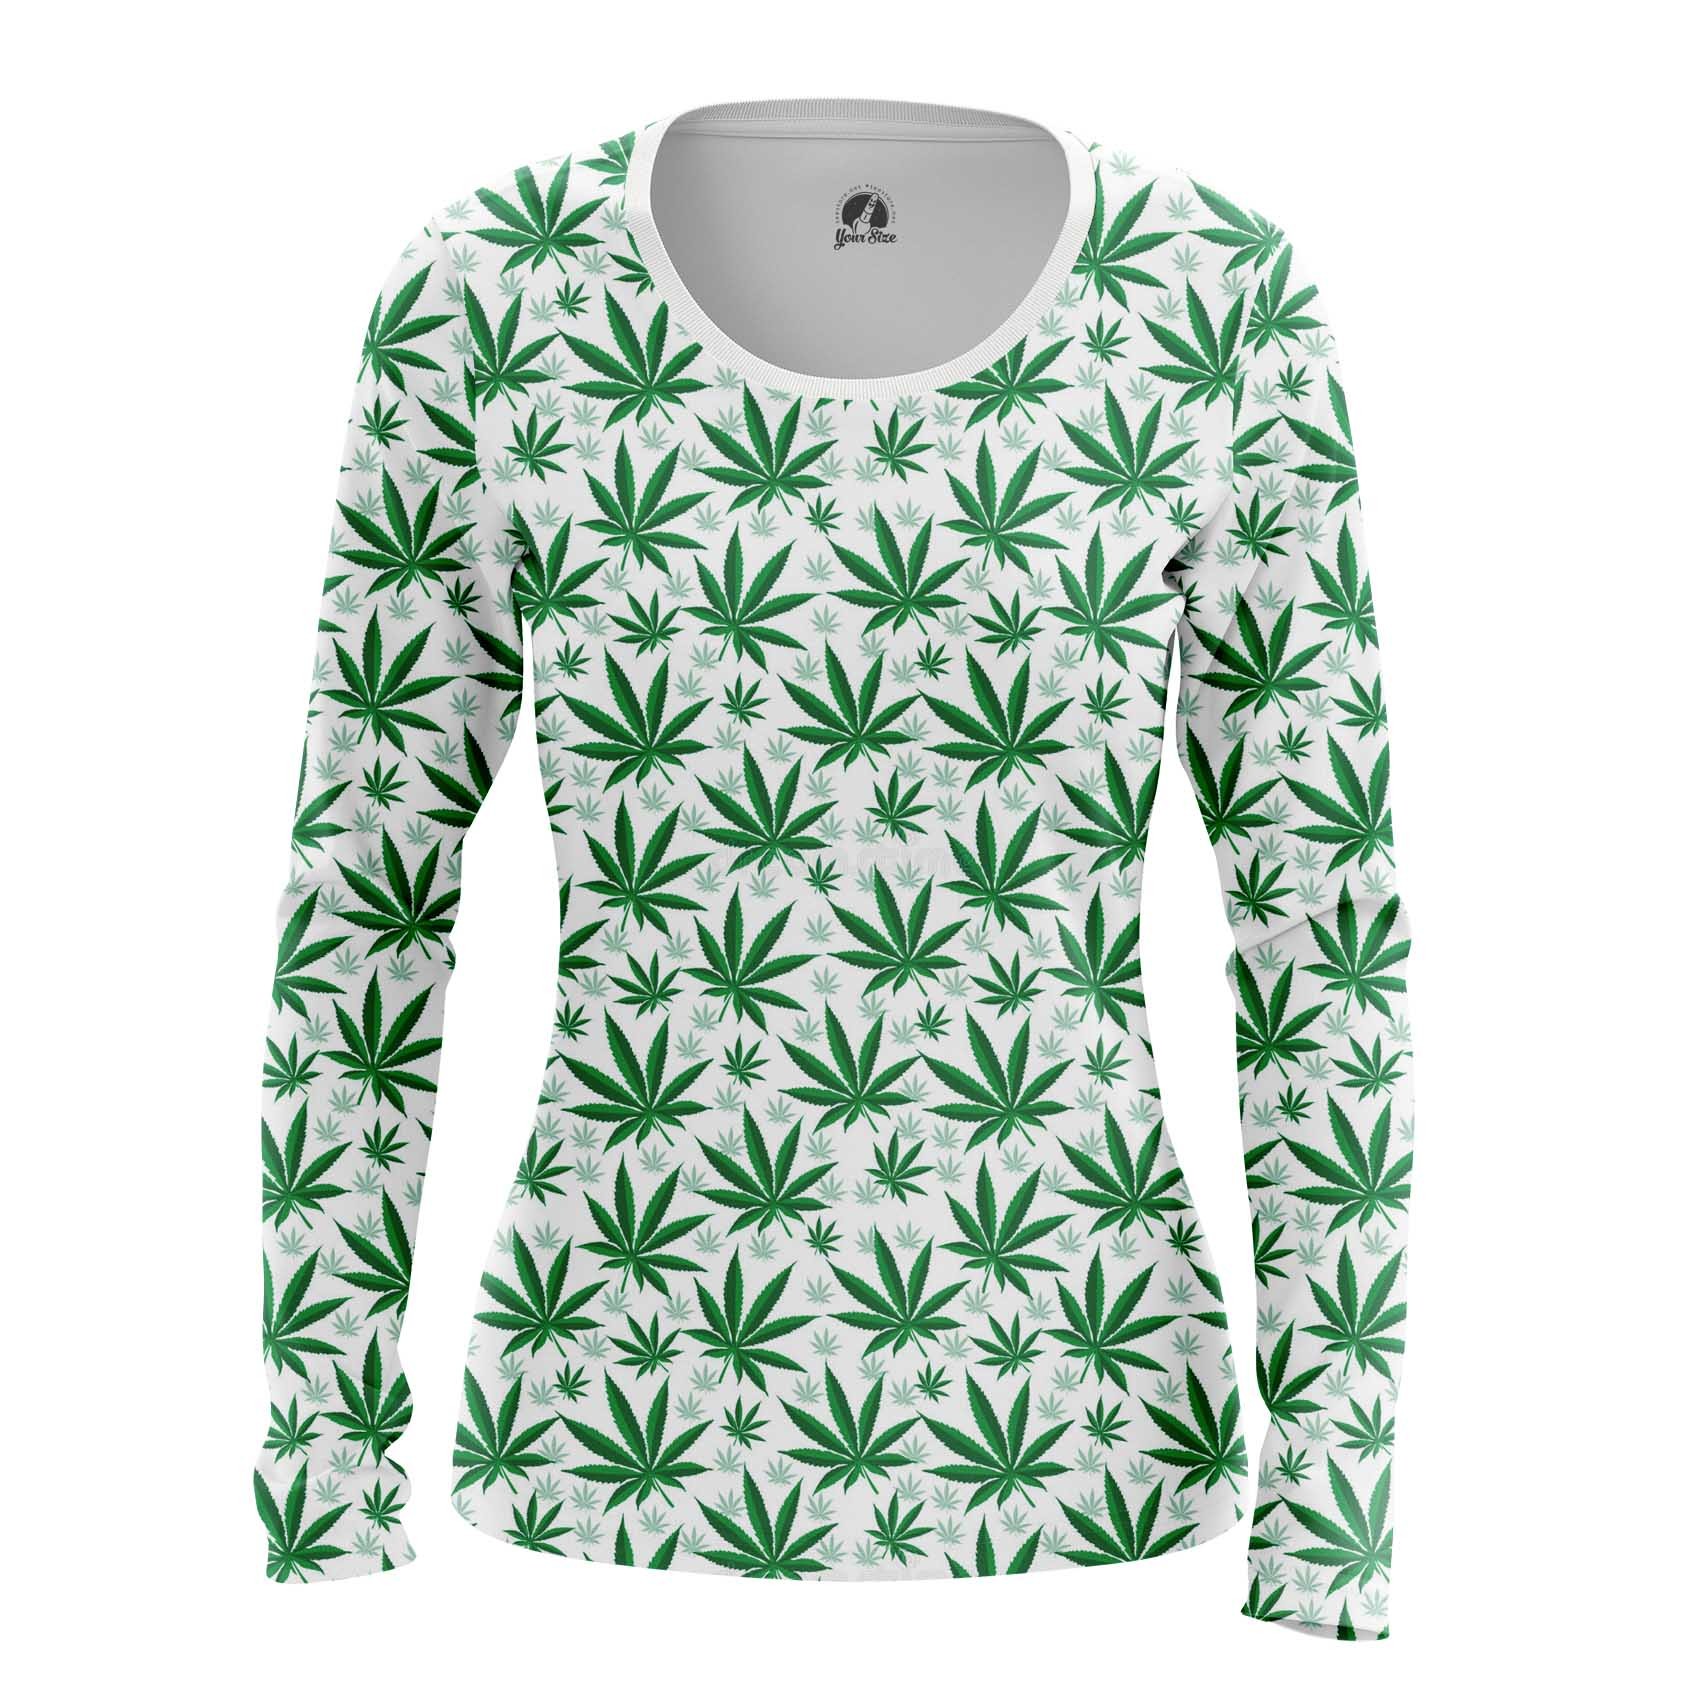 заказать одежду с марихуаной